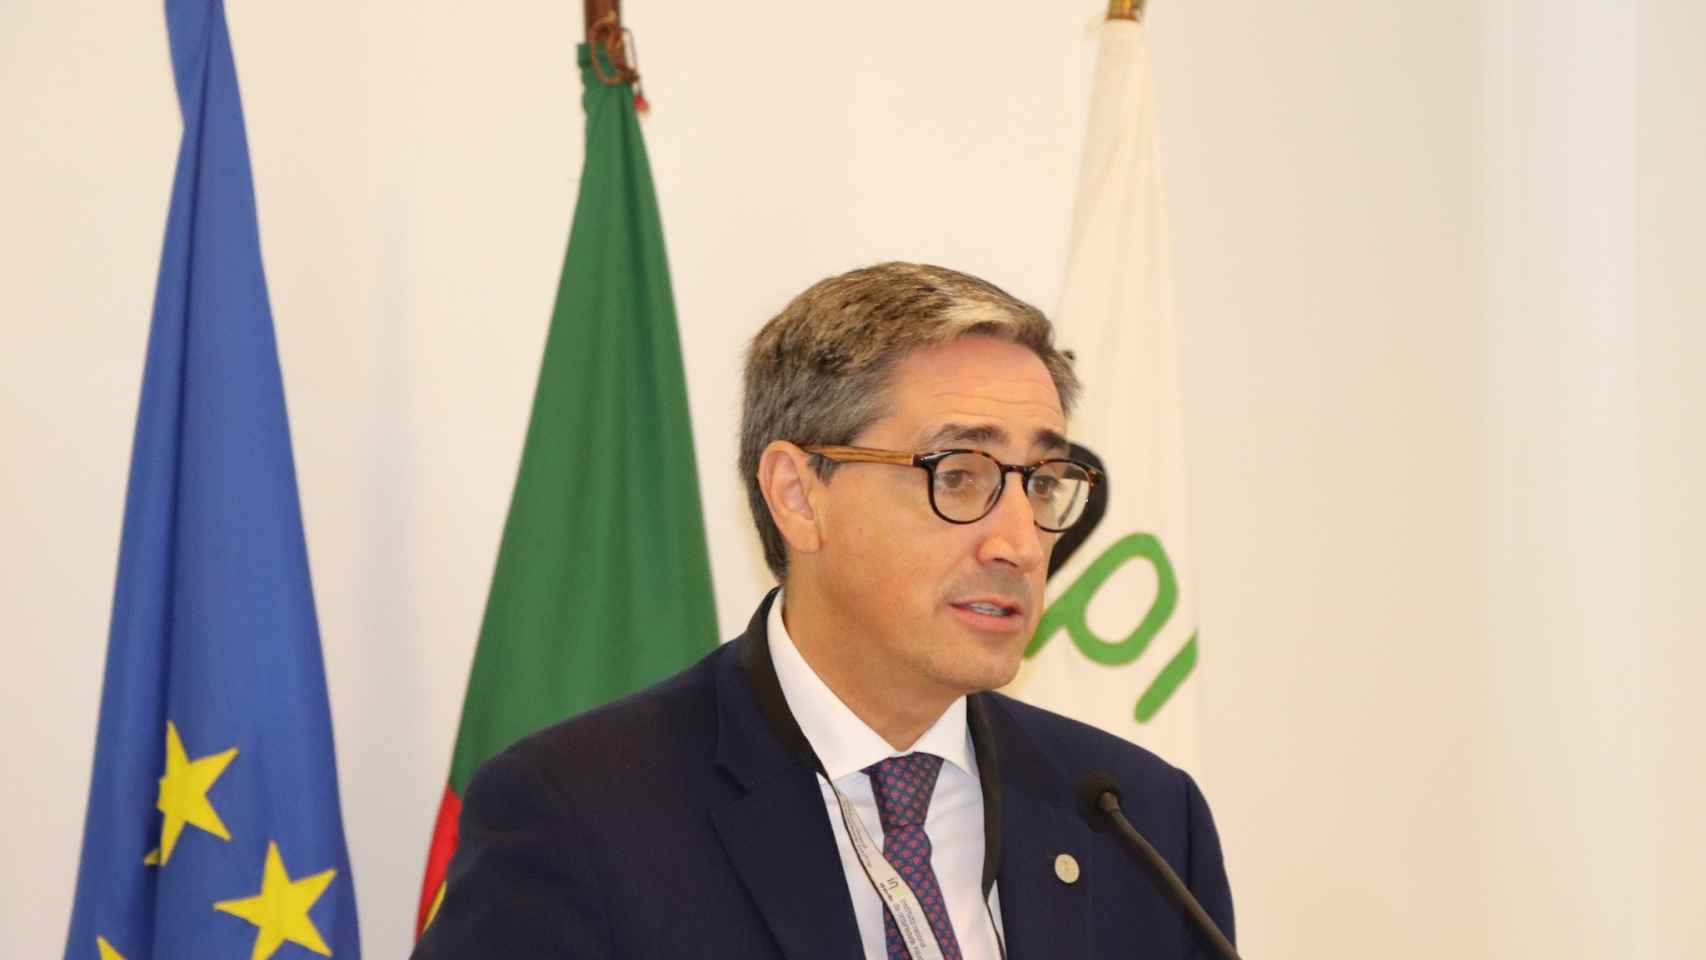 João Negrão, el candidato portugués en la sede la propiedad intelectual lusa.